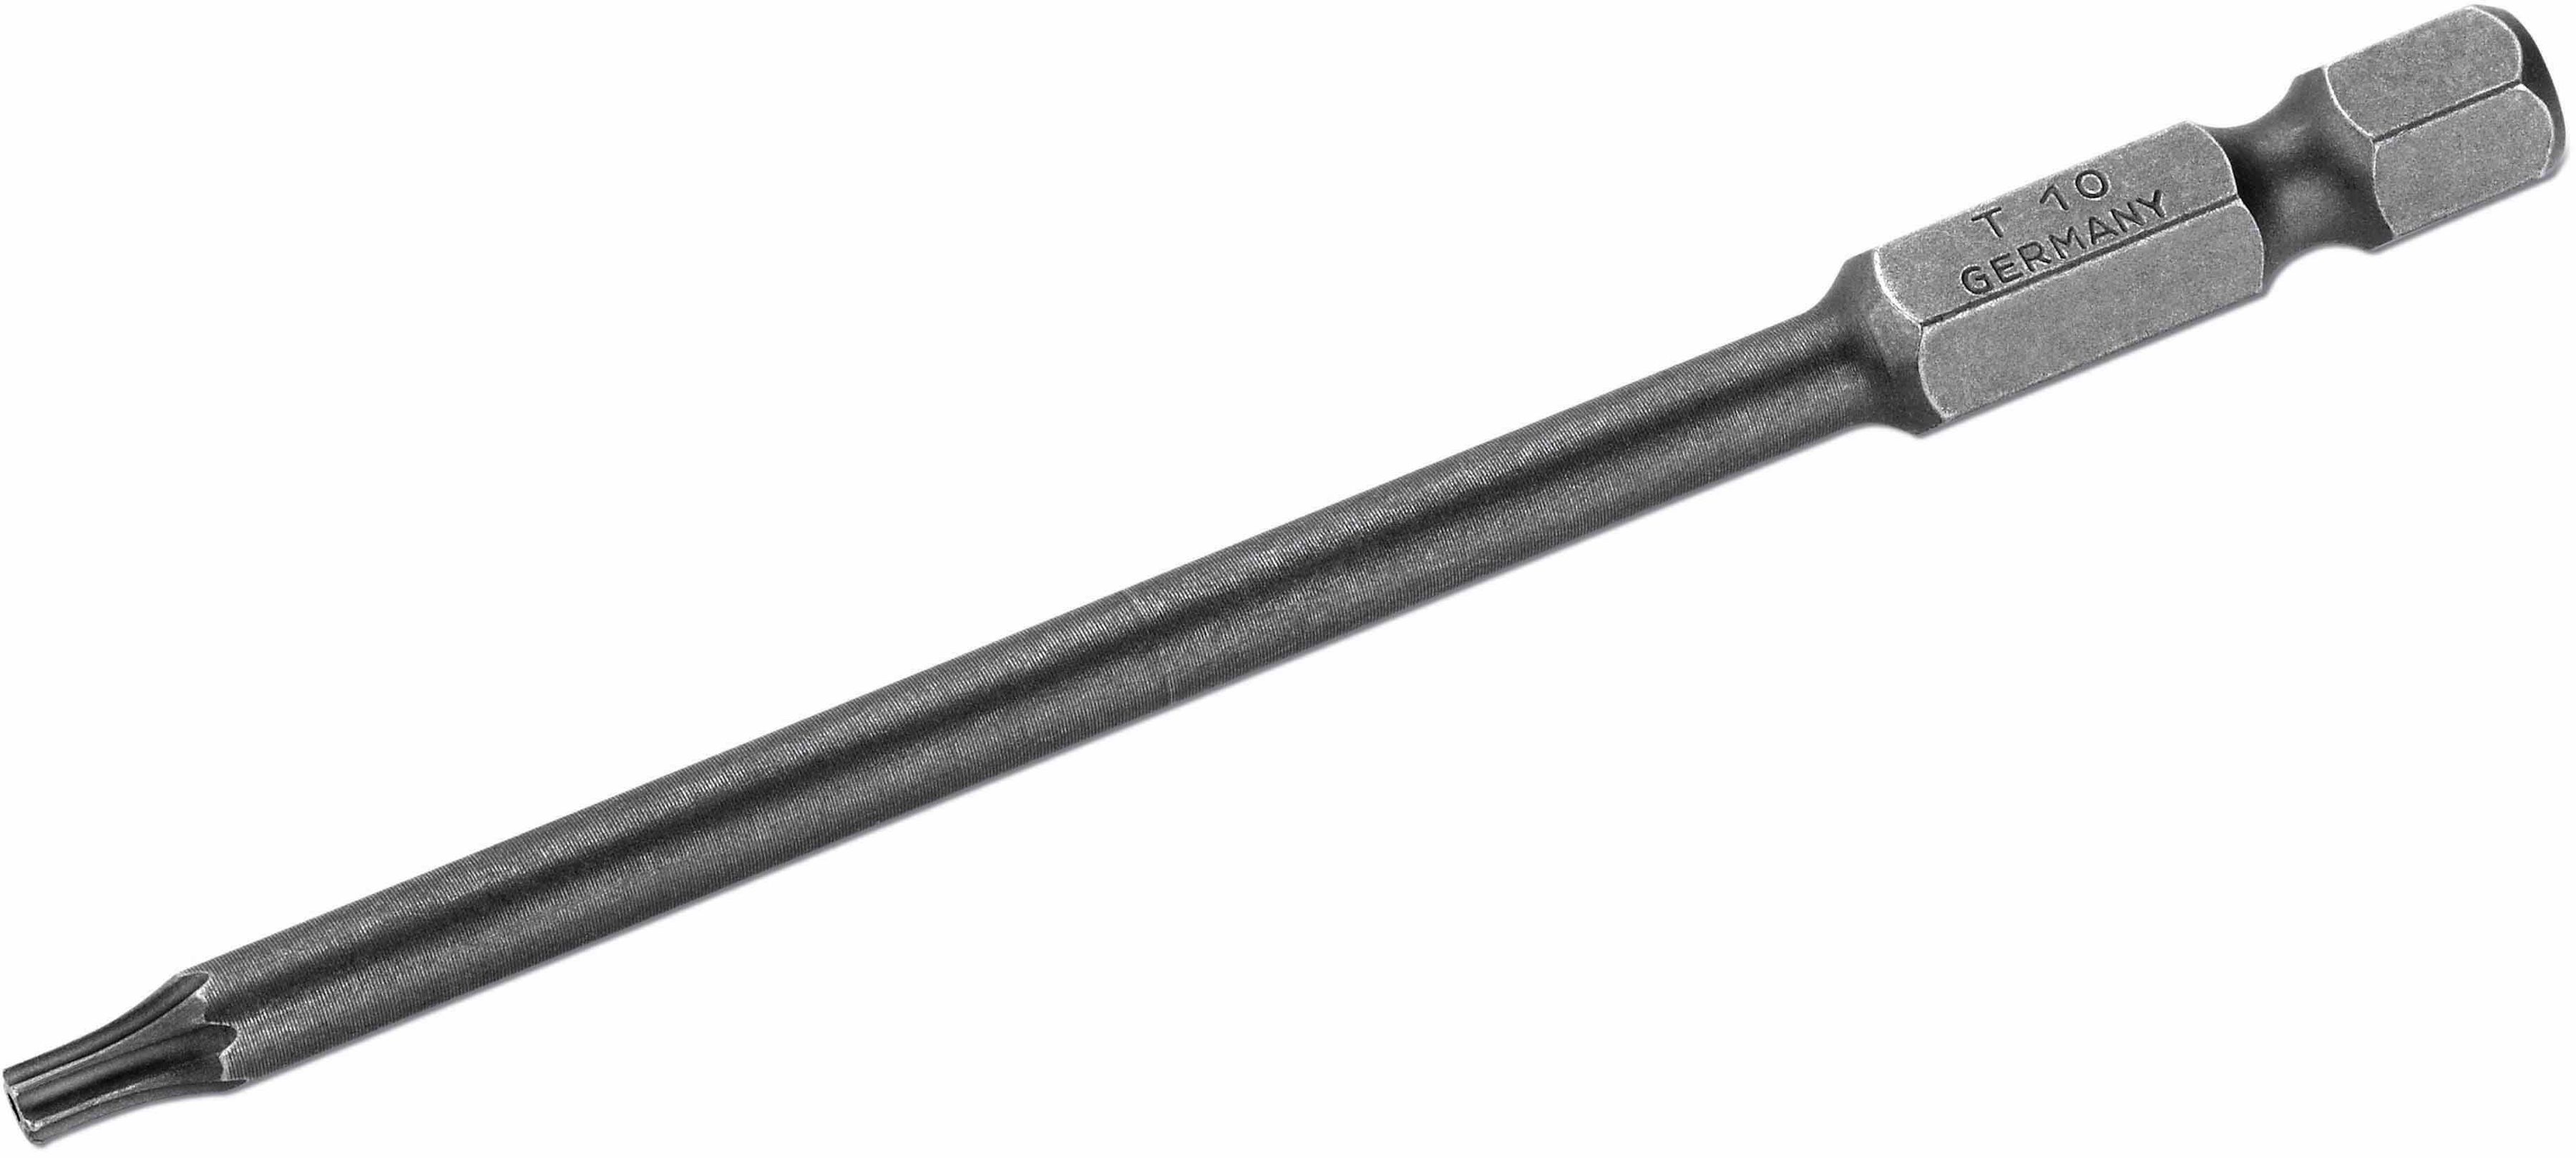 Standard embouts simples pour vis Torx perçage T20 long. 90mm